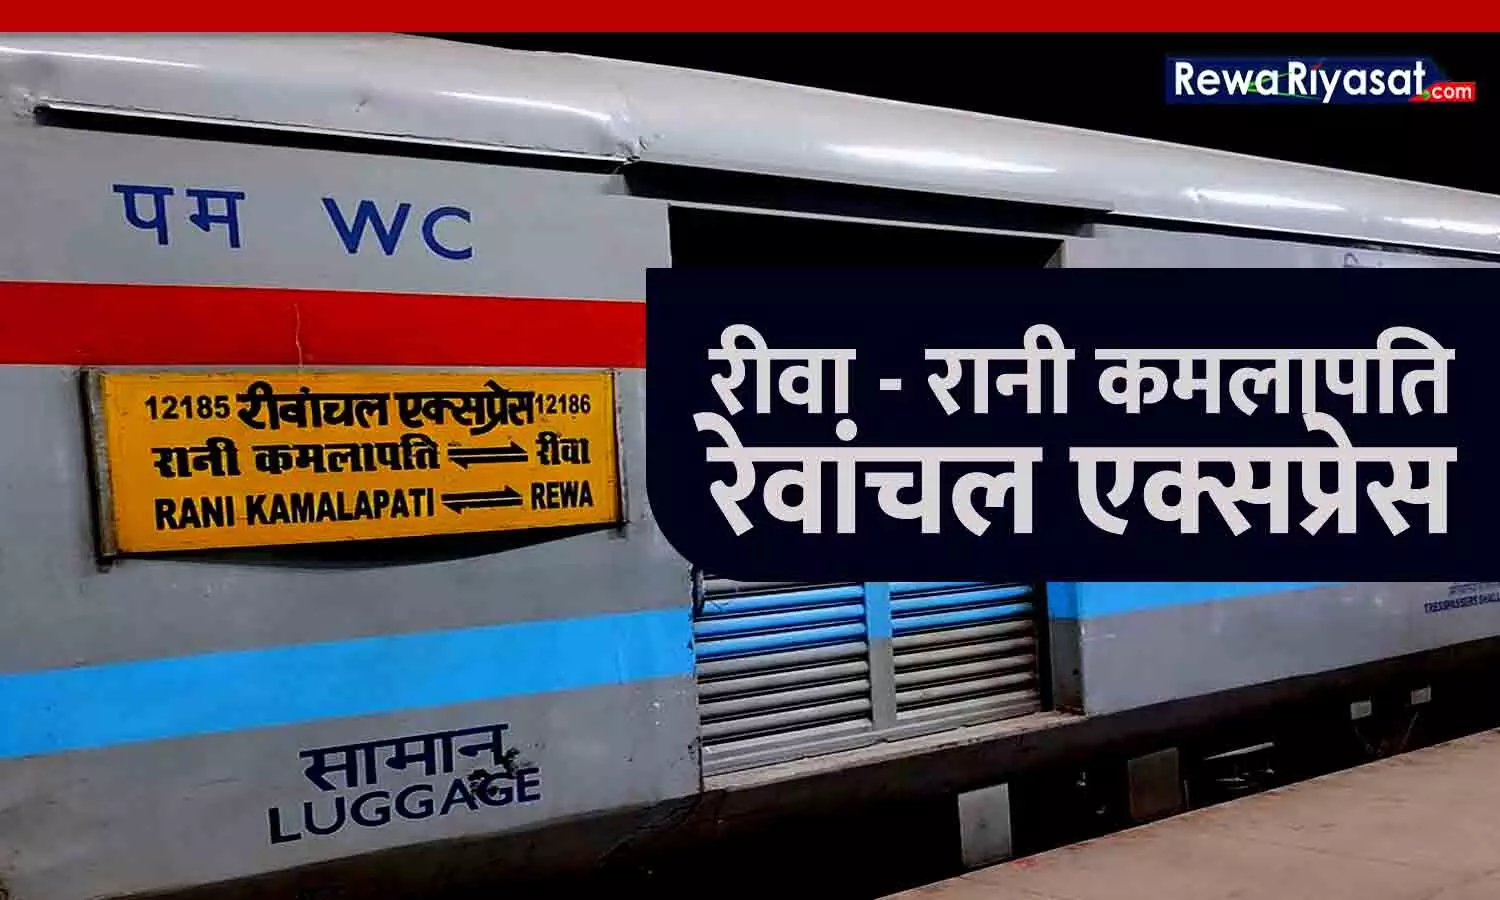 Rewa Railway News: रीवा-रानी कमलापति स्टेशन के बीच समर स्पेशल ट्रेन 20 से चलेगी